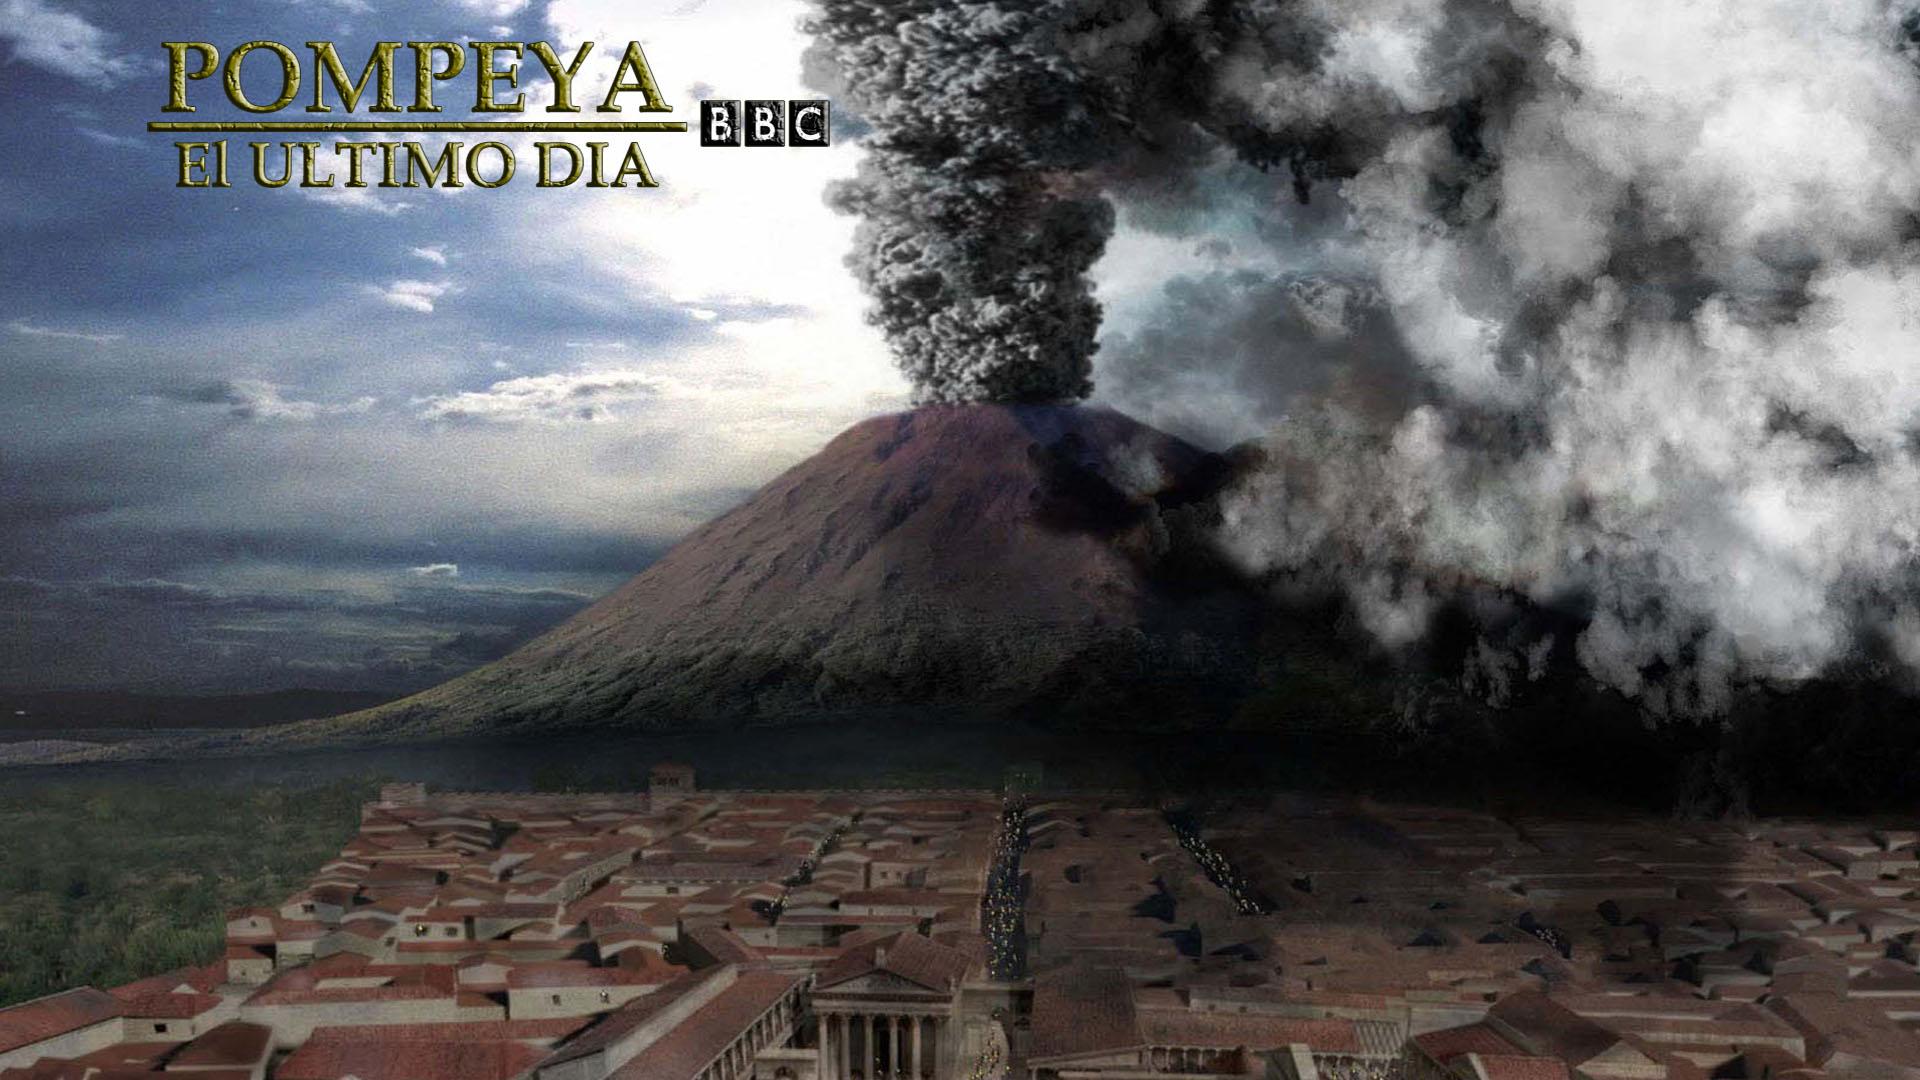 Pompeii: The Last Day